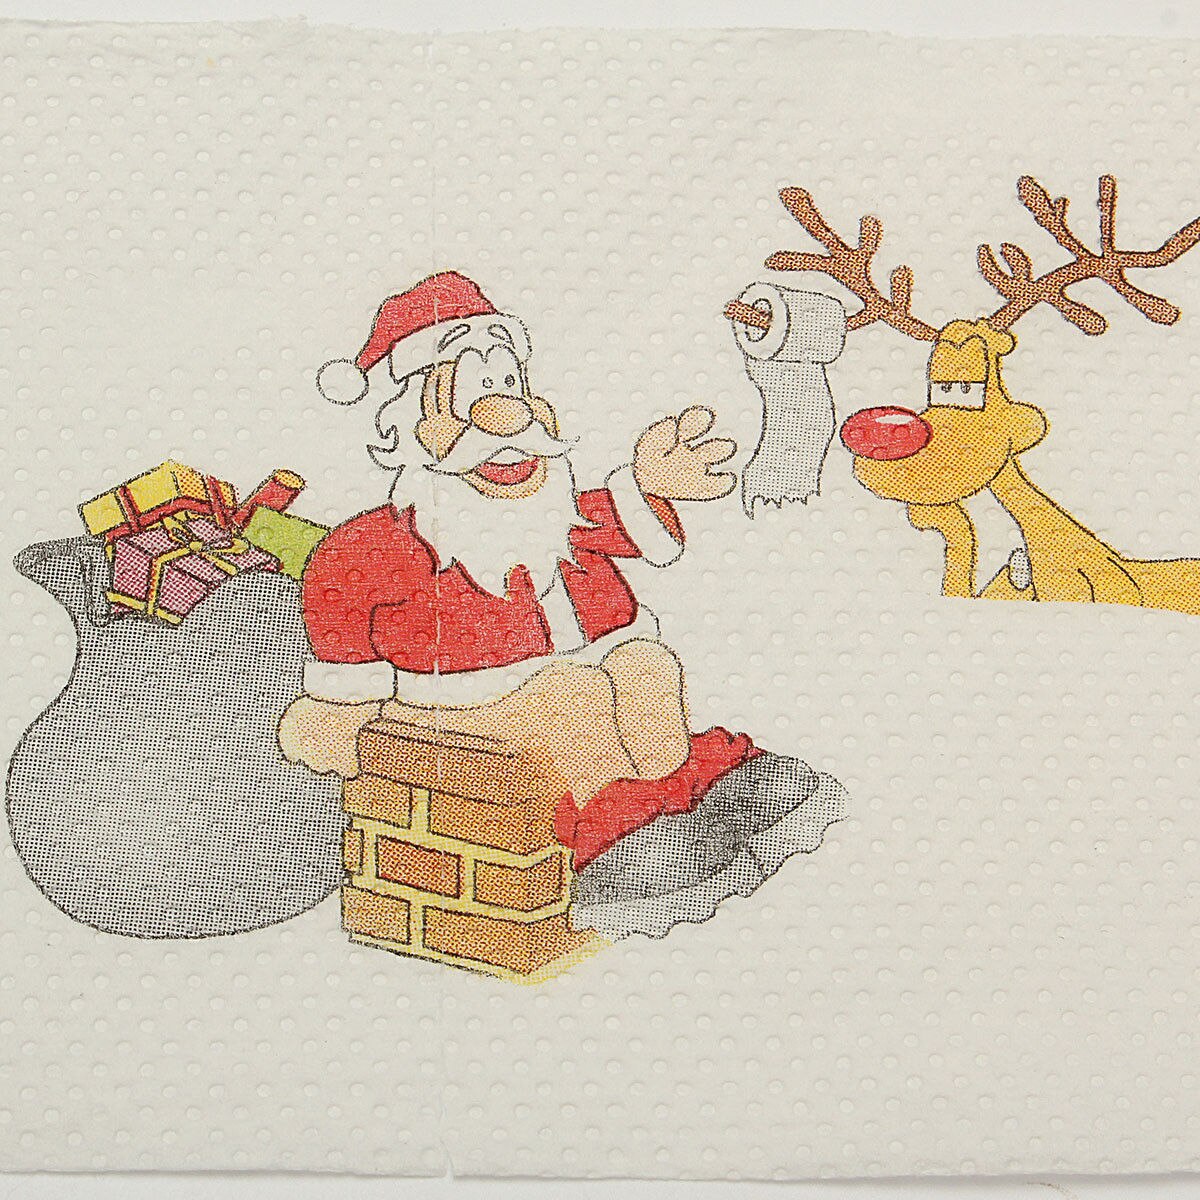 1 rulle julemanden billede trykt toiletpapir sød håndværk sikker hygiejnisk hygiejnepapir xmas julefest ornamenter